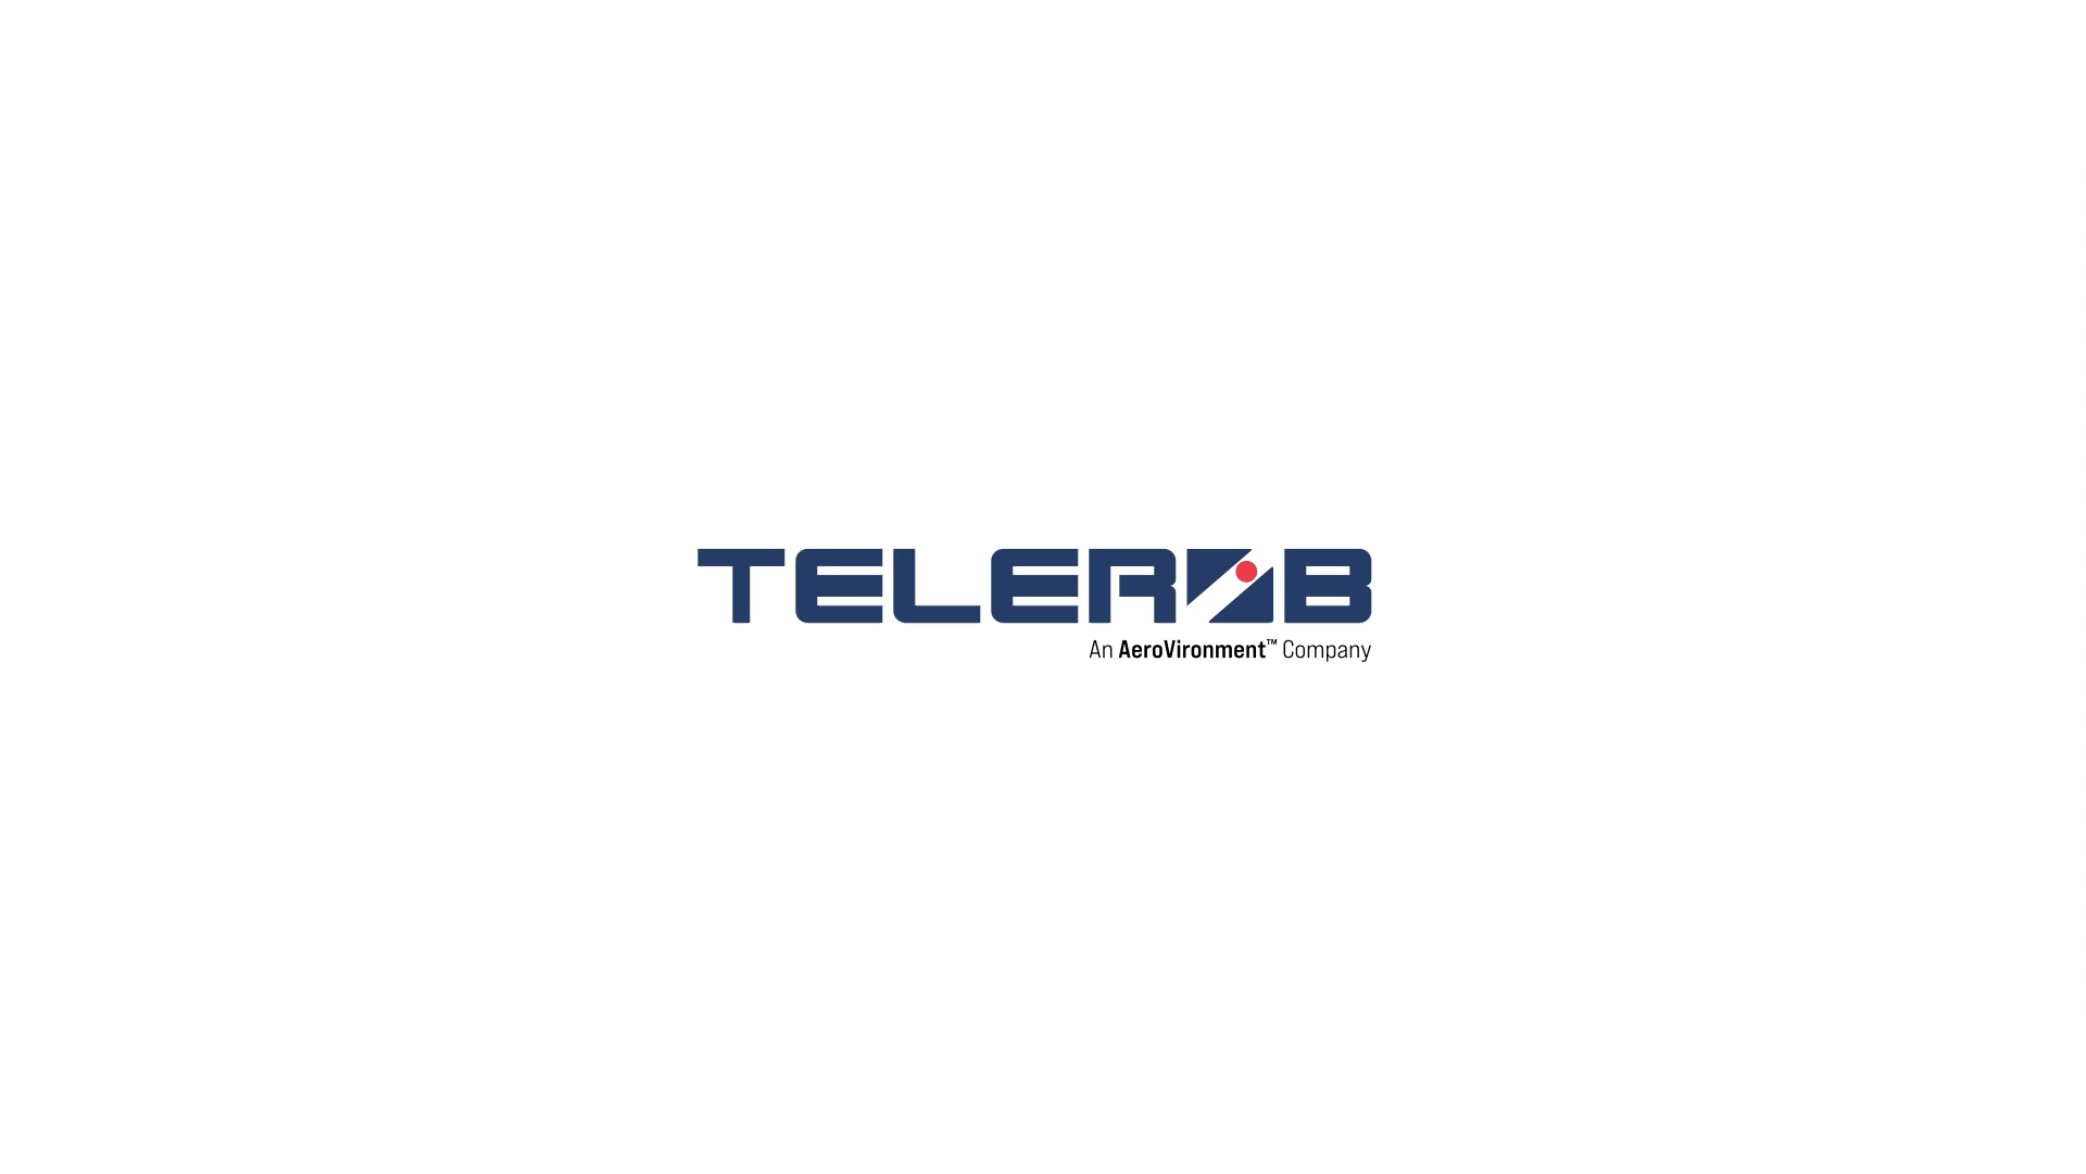 Telerob logo morphs to AV logo